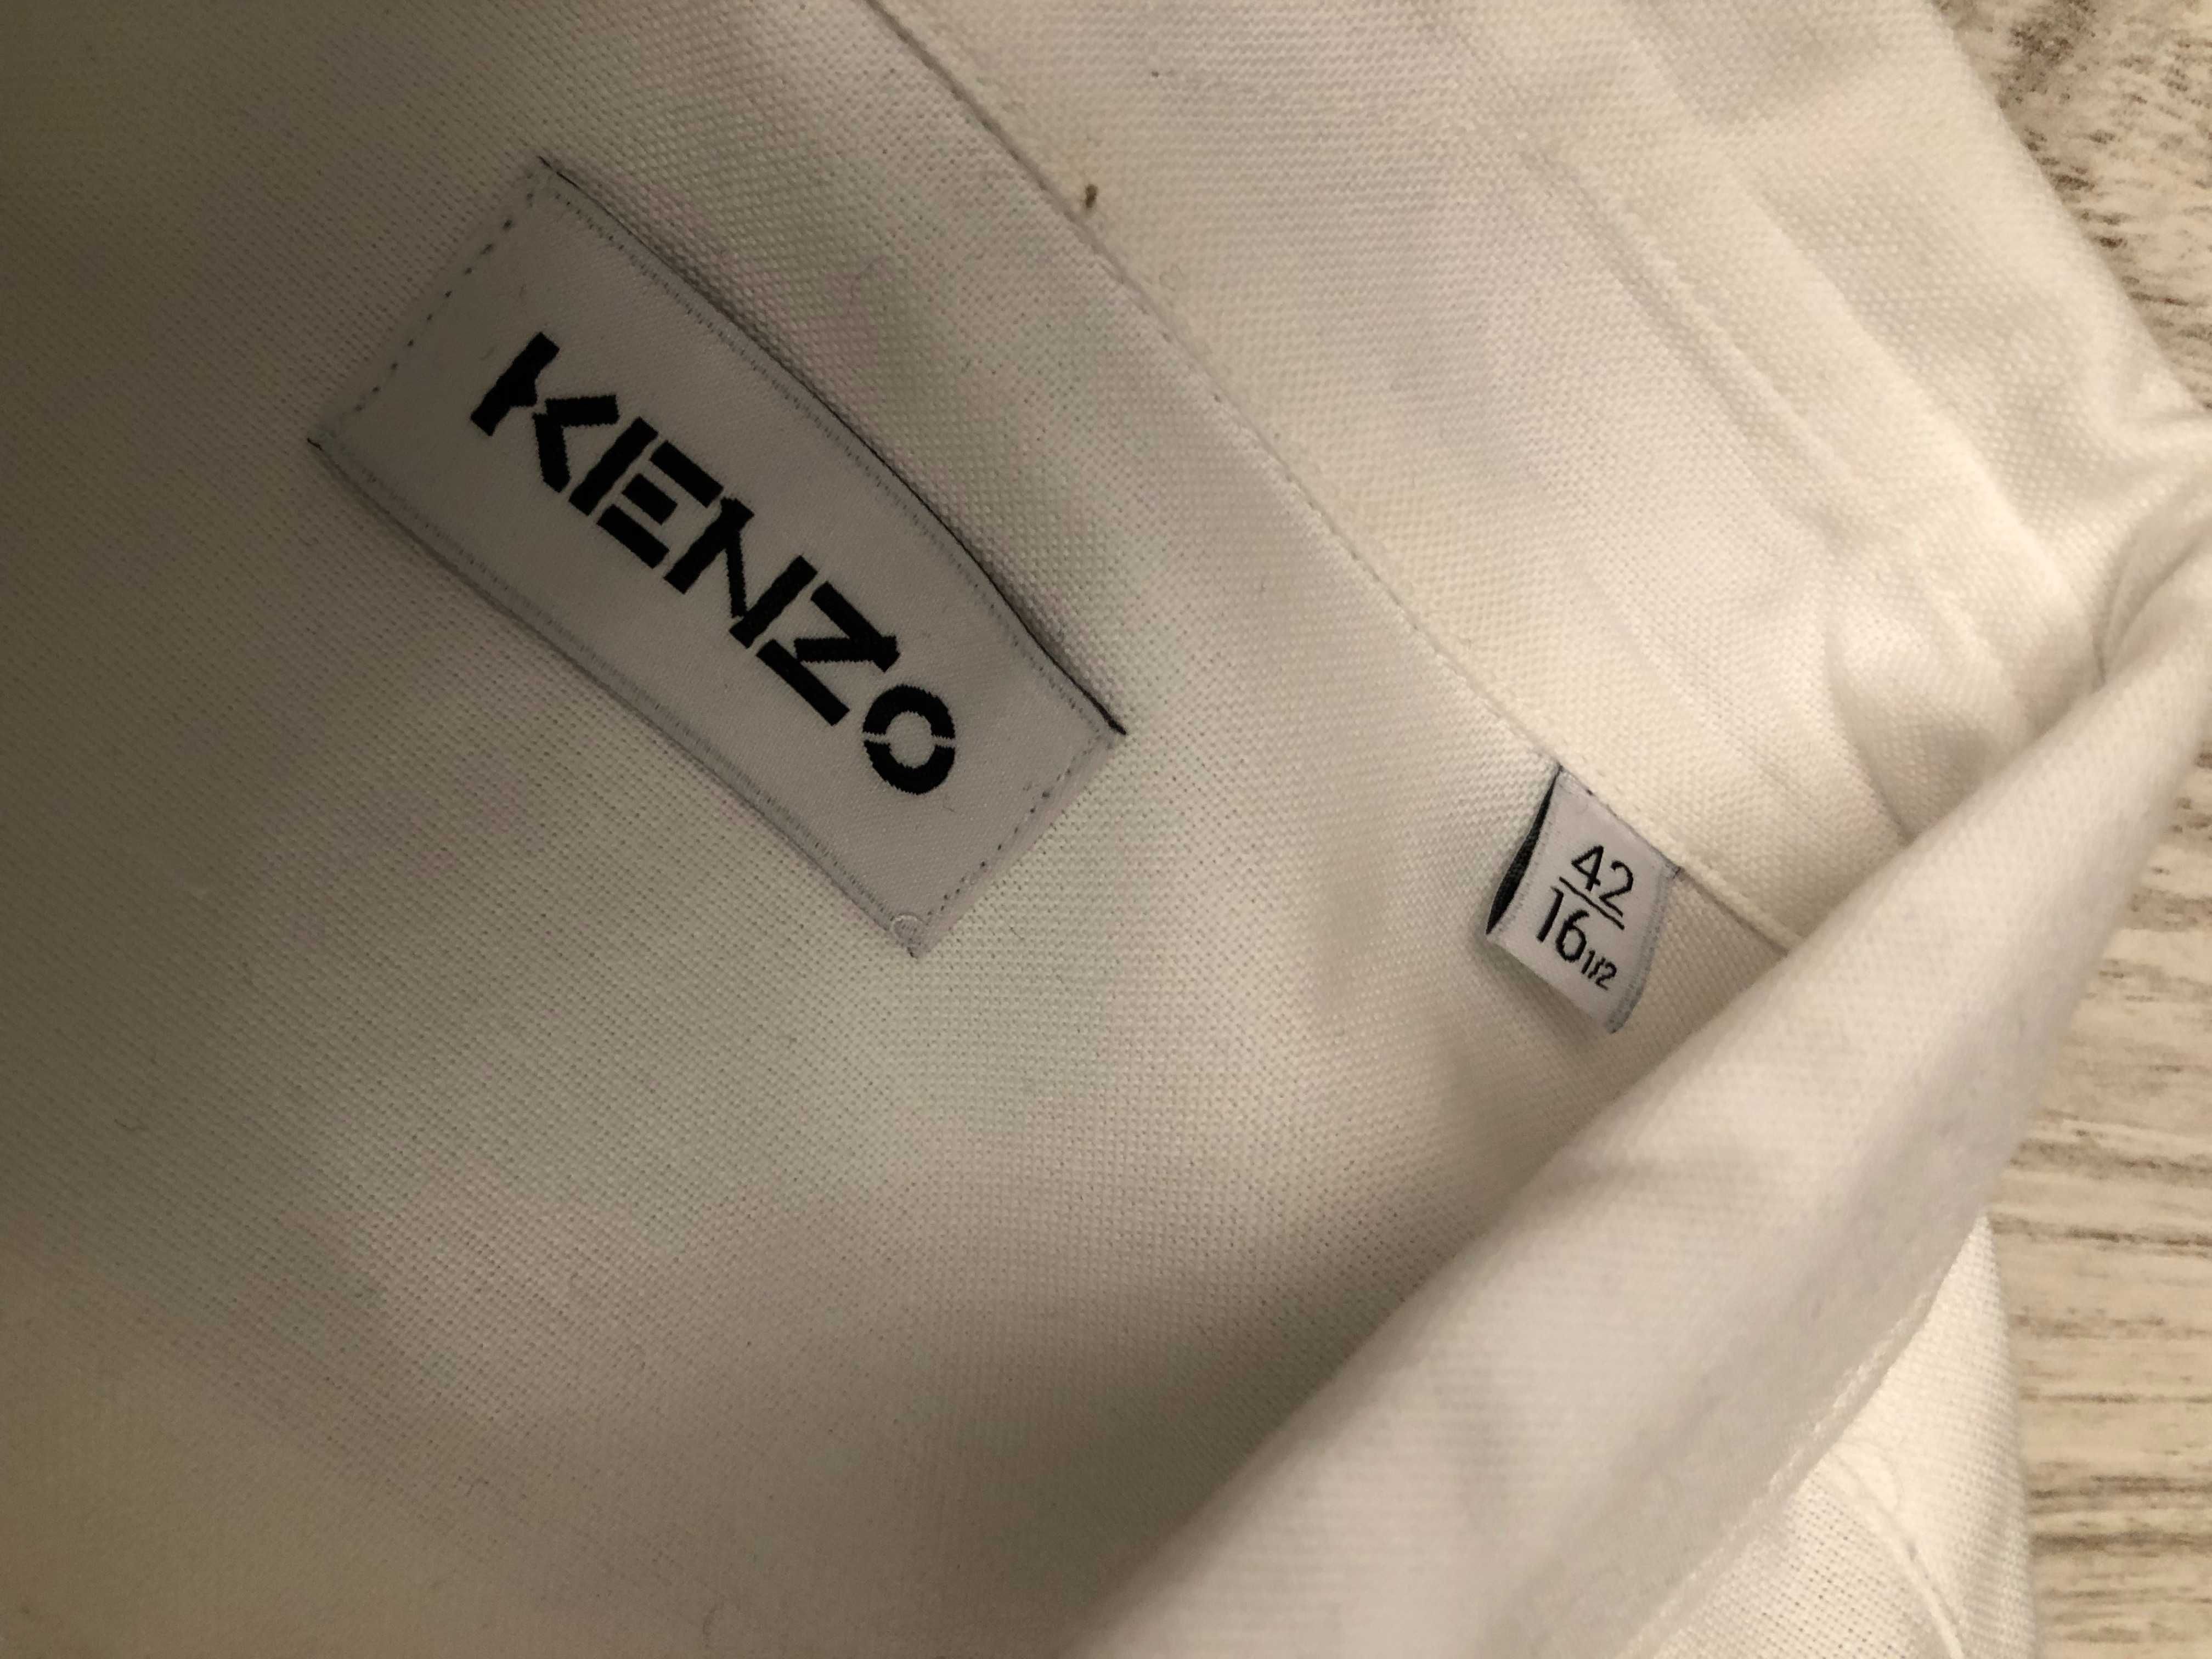 Kenzo camasi barbatesti 41-42-43, originale, retail 170 euro